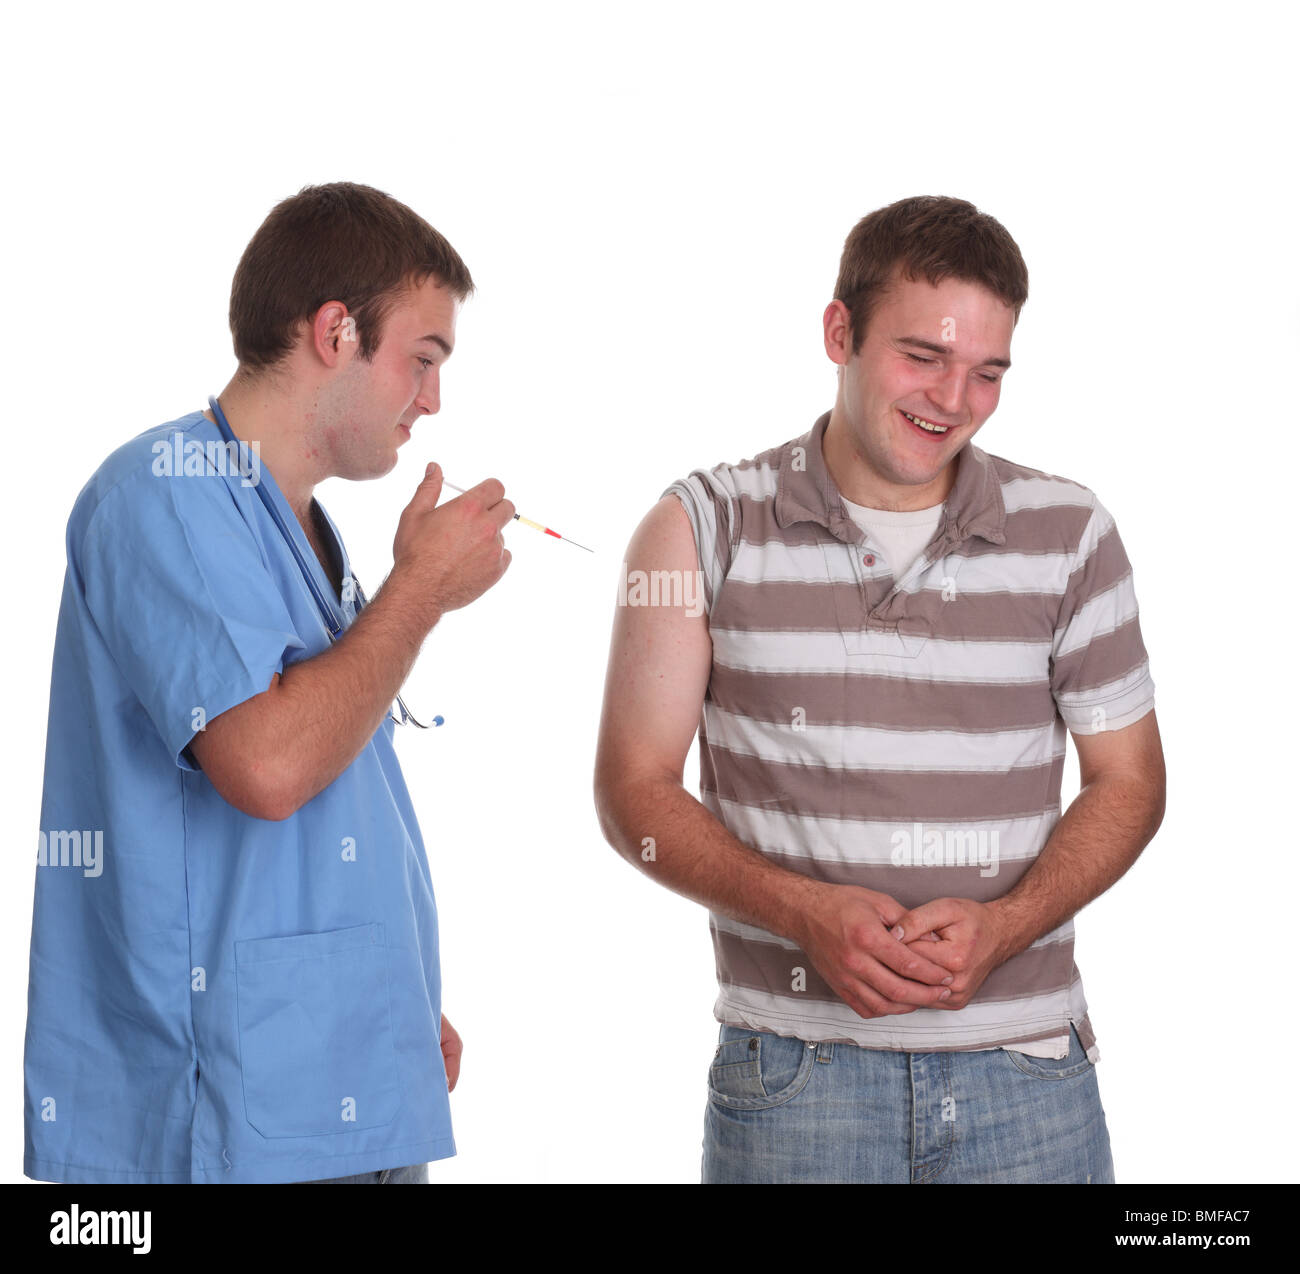 Mai 2010 - junges männliches Modell in medizinischen Schruben als männliche Krankenschwester, Stockfoto